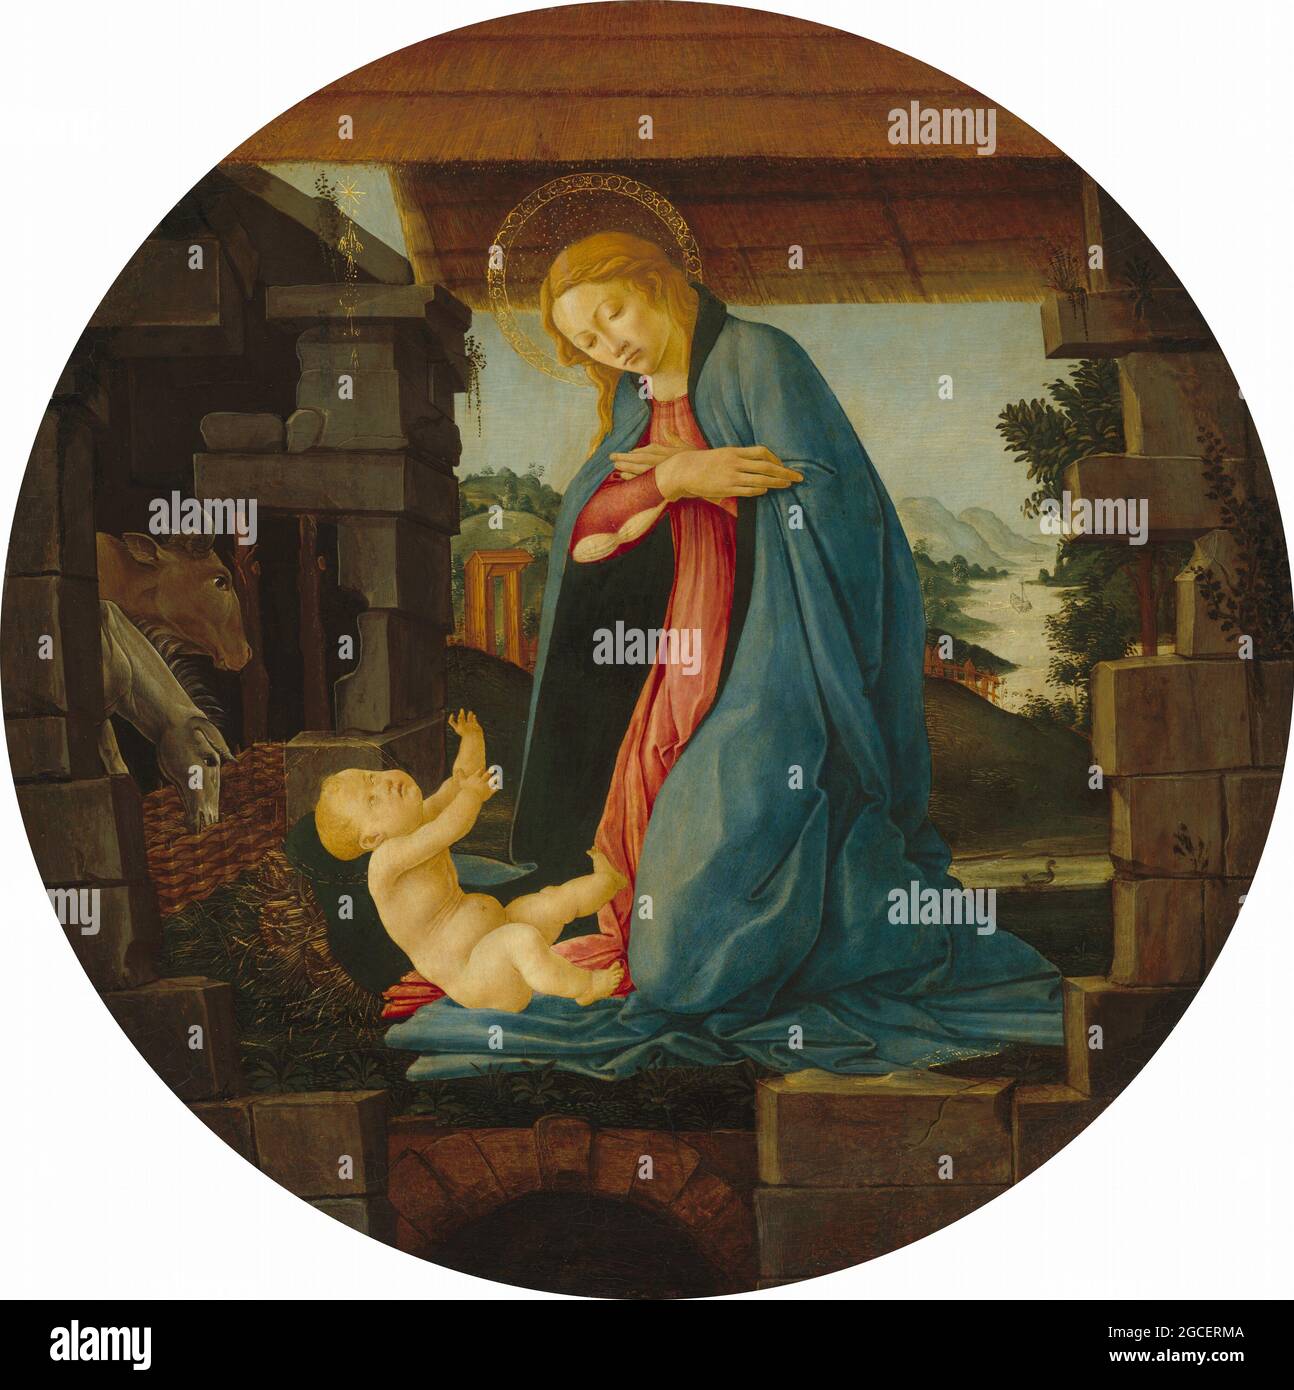 Titel: Die Jungfrau, die das Kind anbetend Schöpferin: Sandro Botticelli Datum: 1480/1490 Medium: Tempera auf Pappel-Tafel Größe: Durchmesser: 58.9 cm Ort: Nationalgalerie Stockfoto